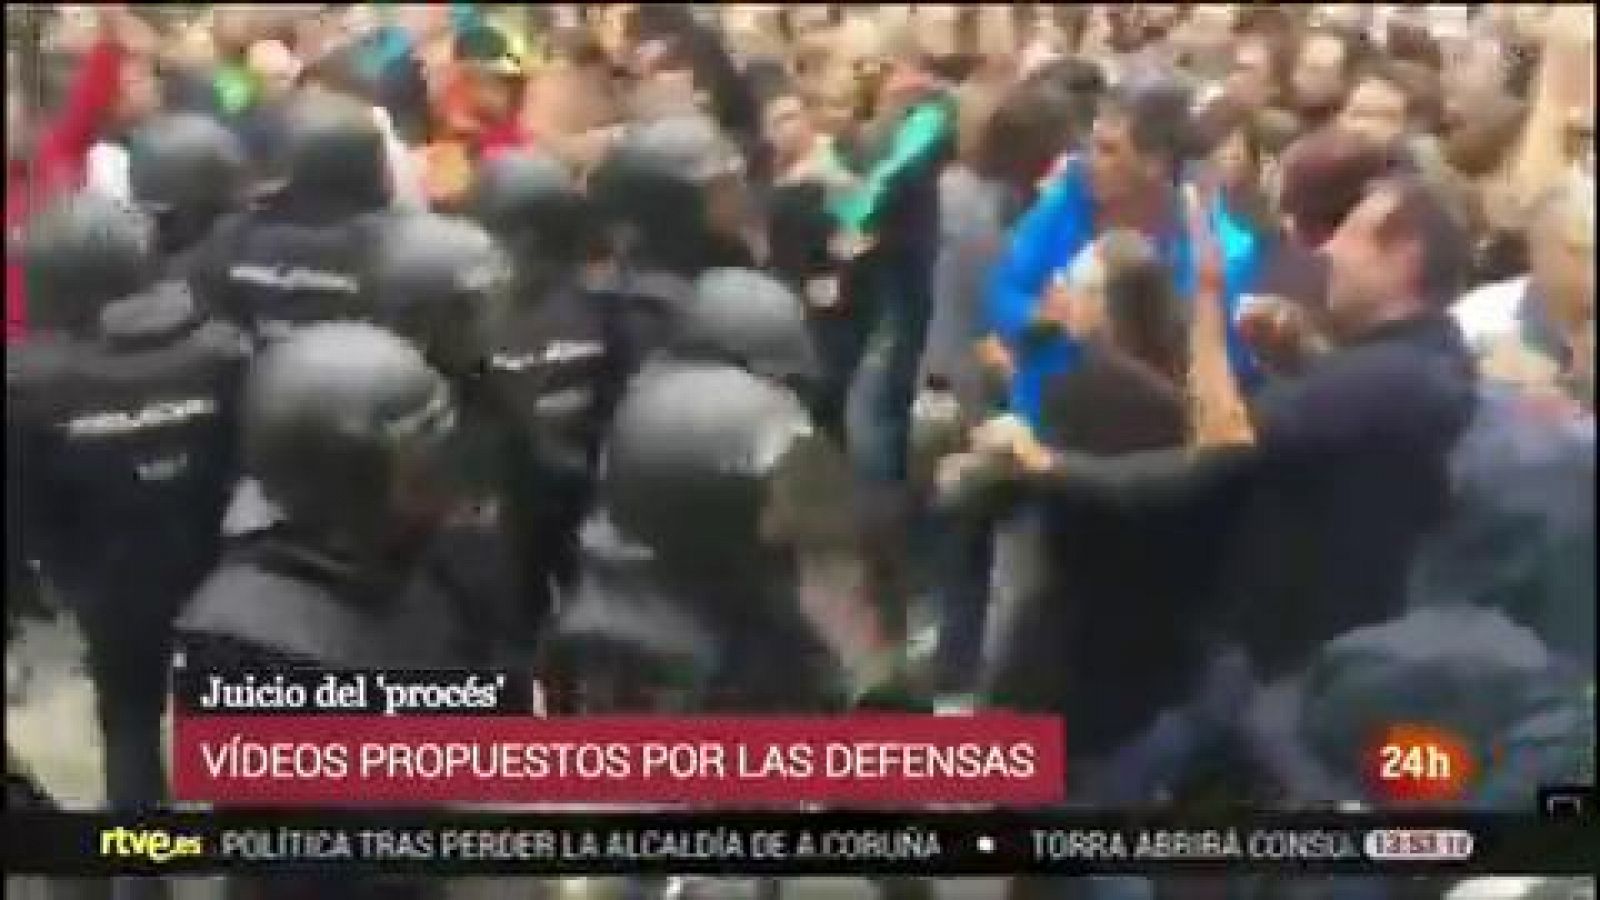 Juicio procés: Agentes de policía golpean con las porras a concentrados en el colegio Verd de Girona